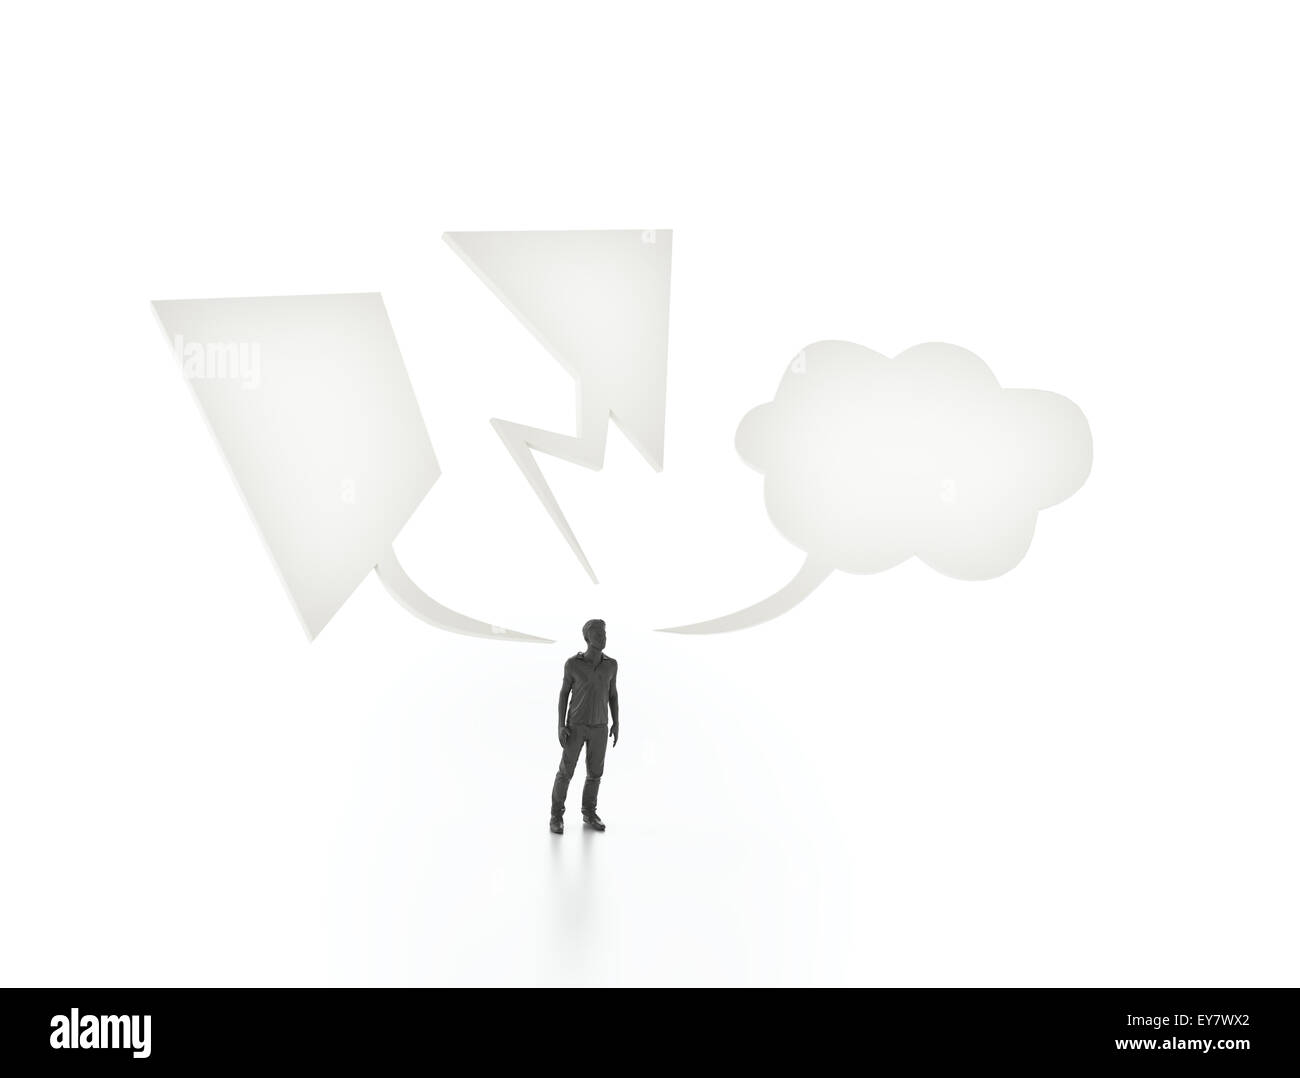 Mann mit drei verschiedenen Sprechblasen - Kommunikations-Konzept Stockfoto